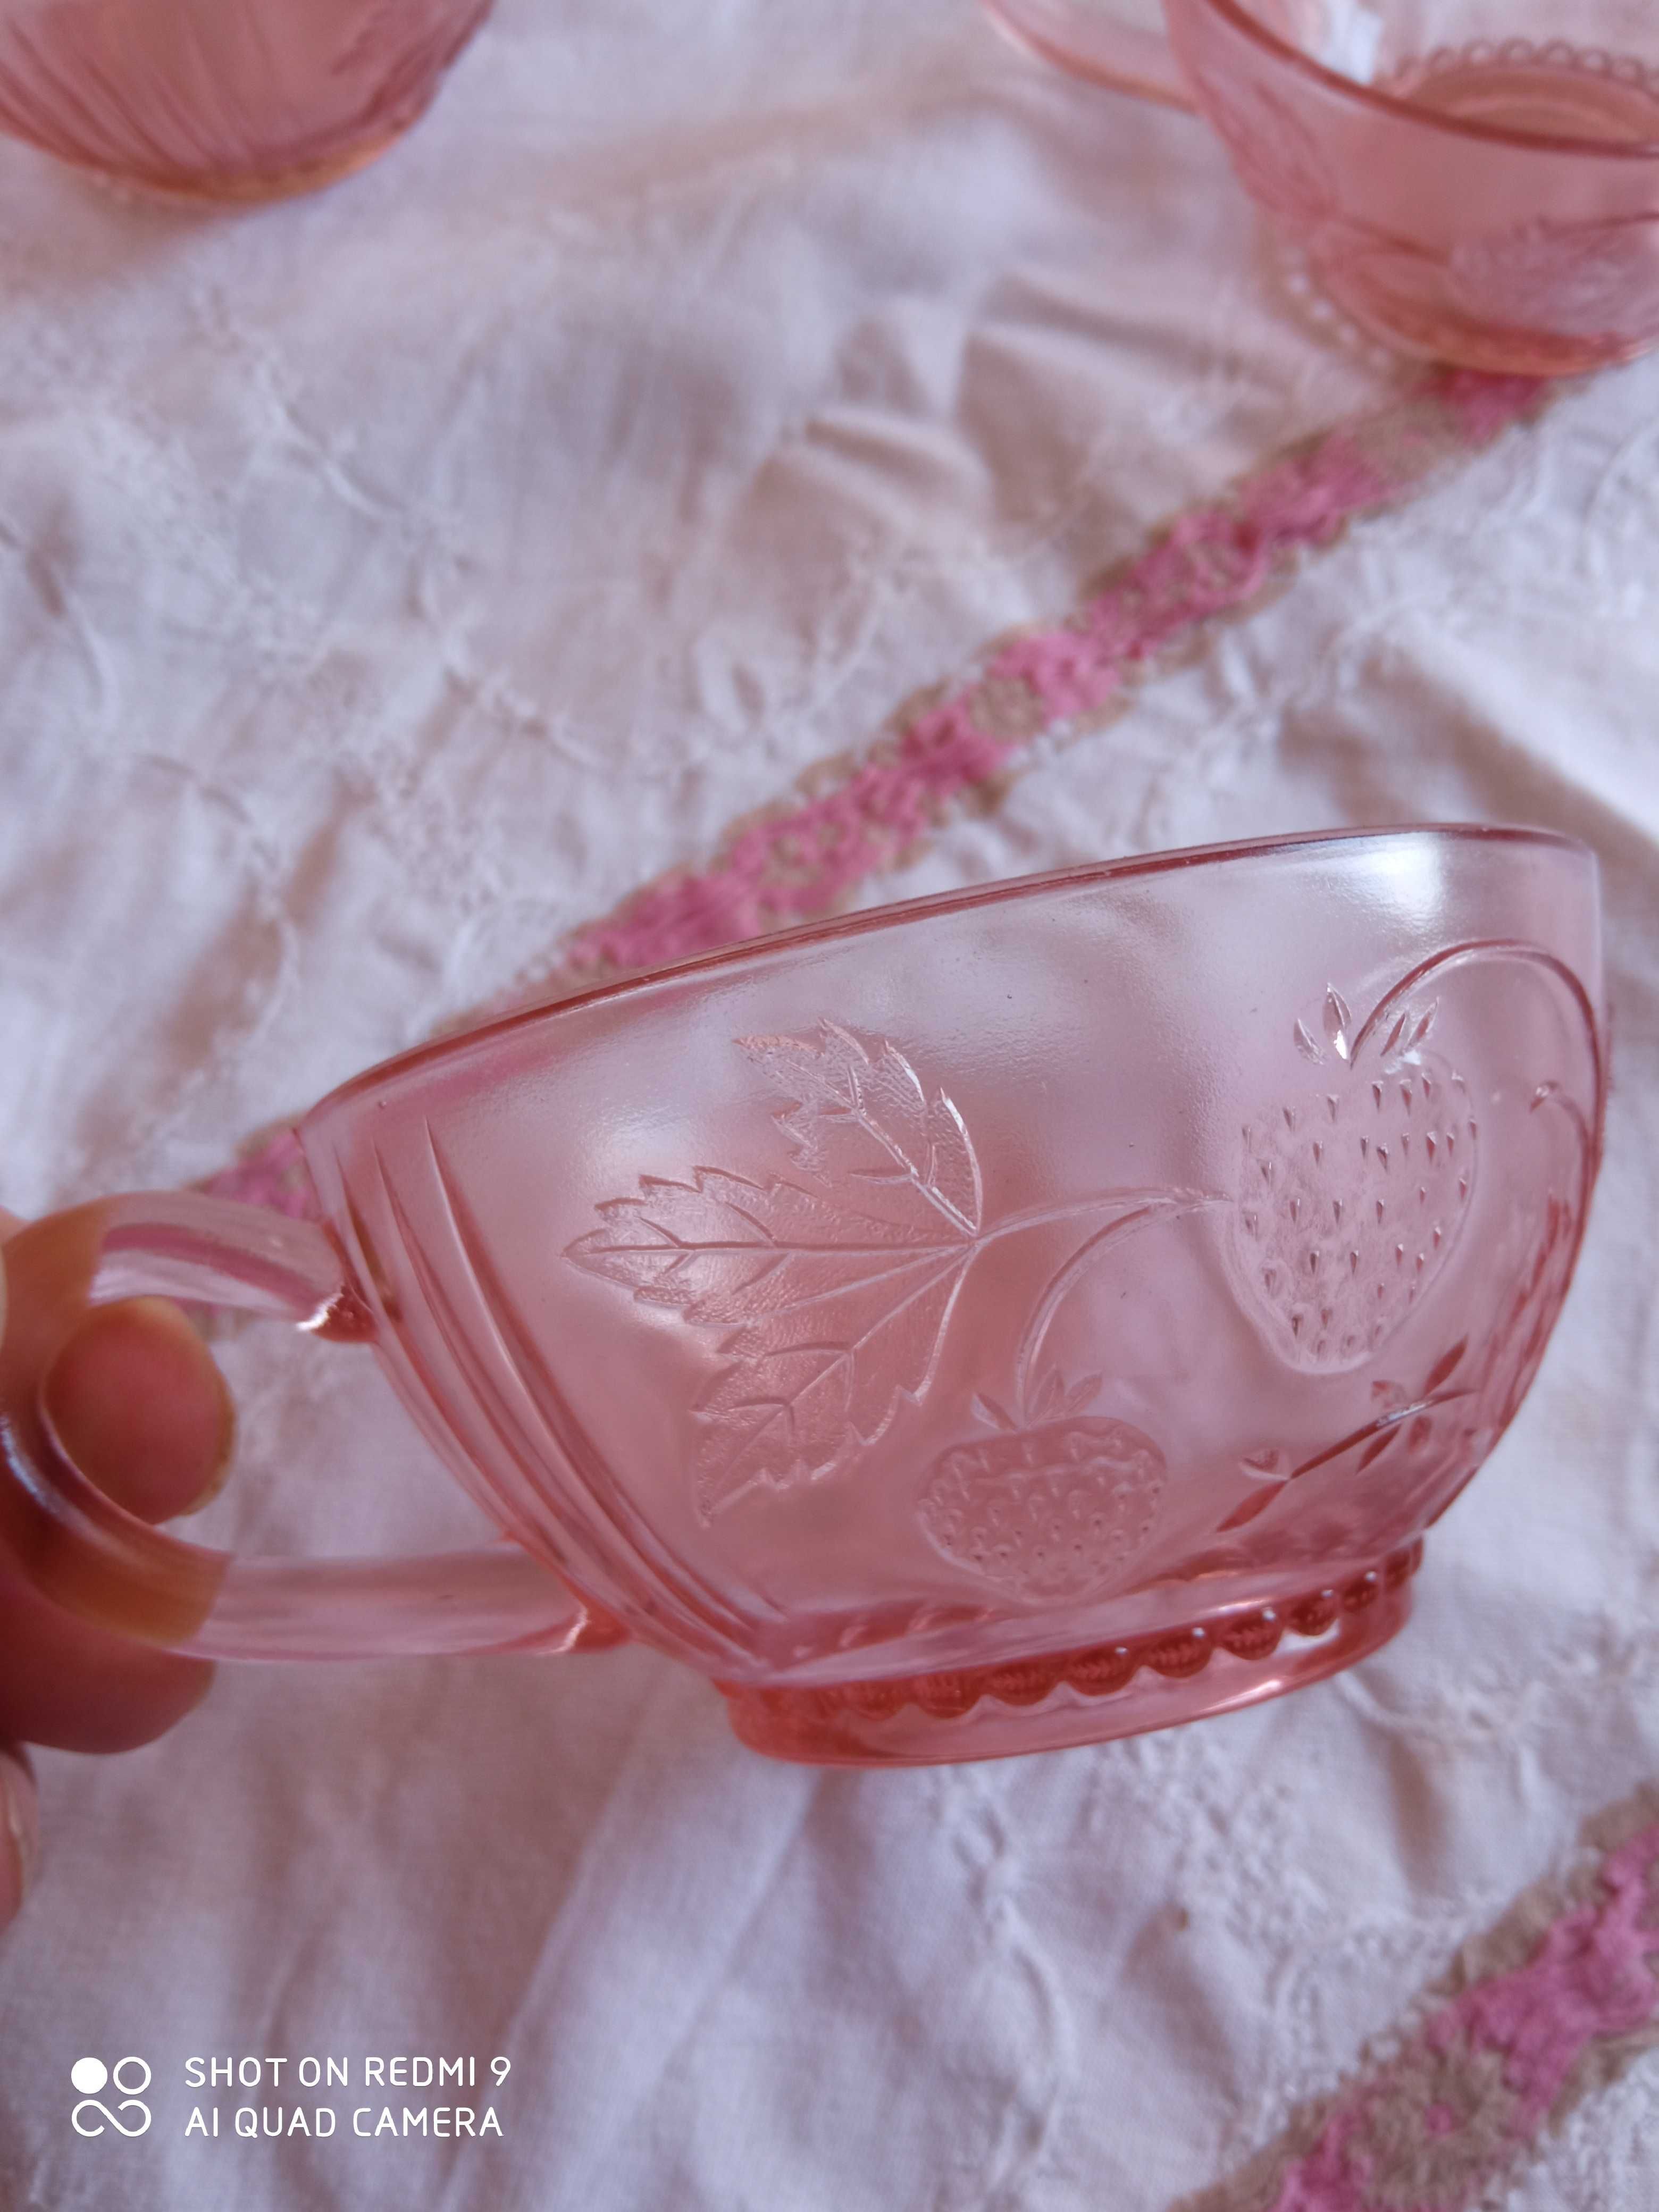 Rozalinowy różowy zestaw do ponczu waza + 6 filiżanek stare szkło PRL?